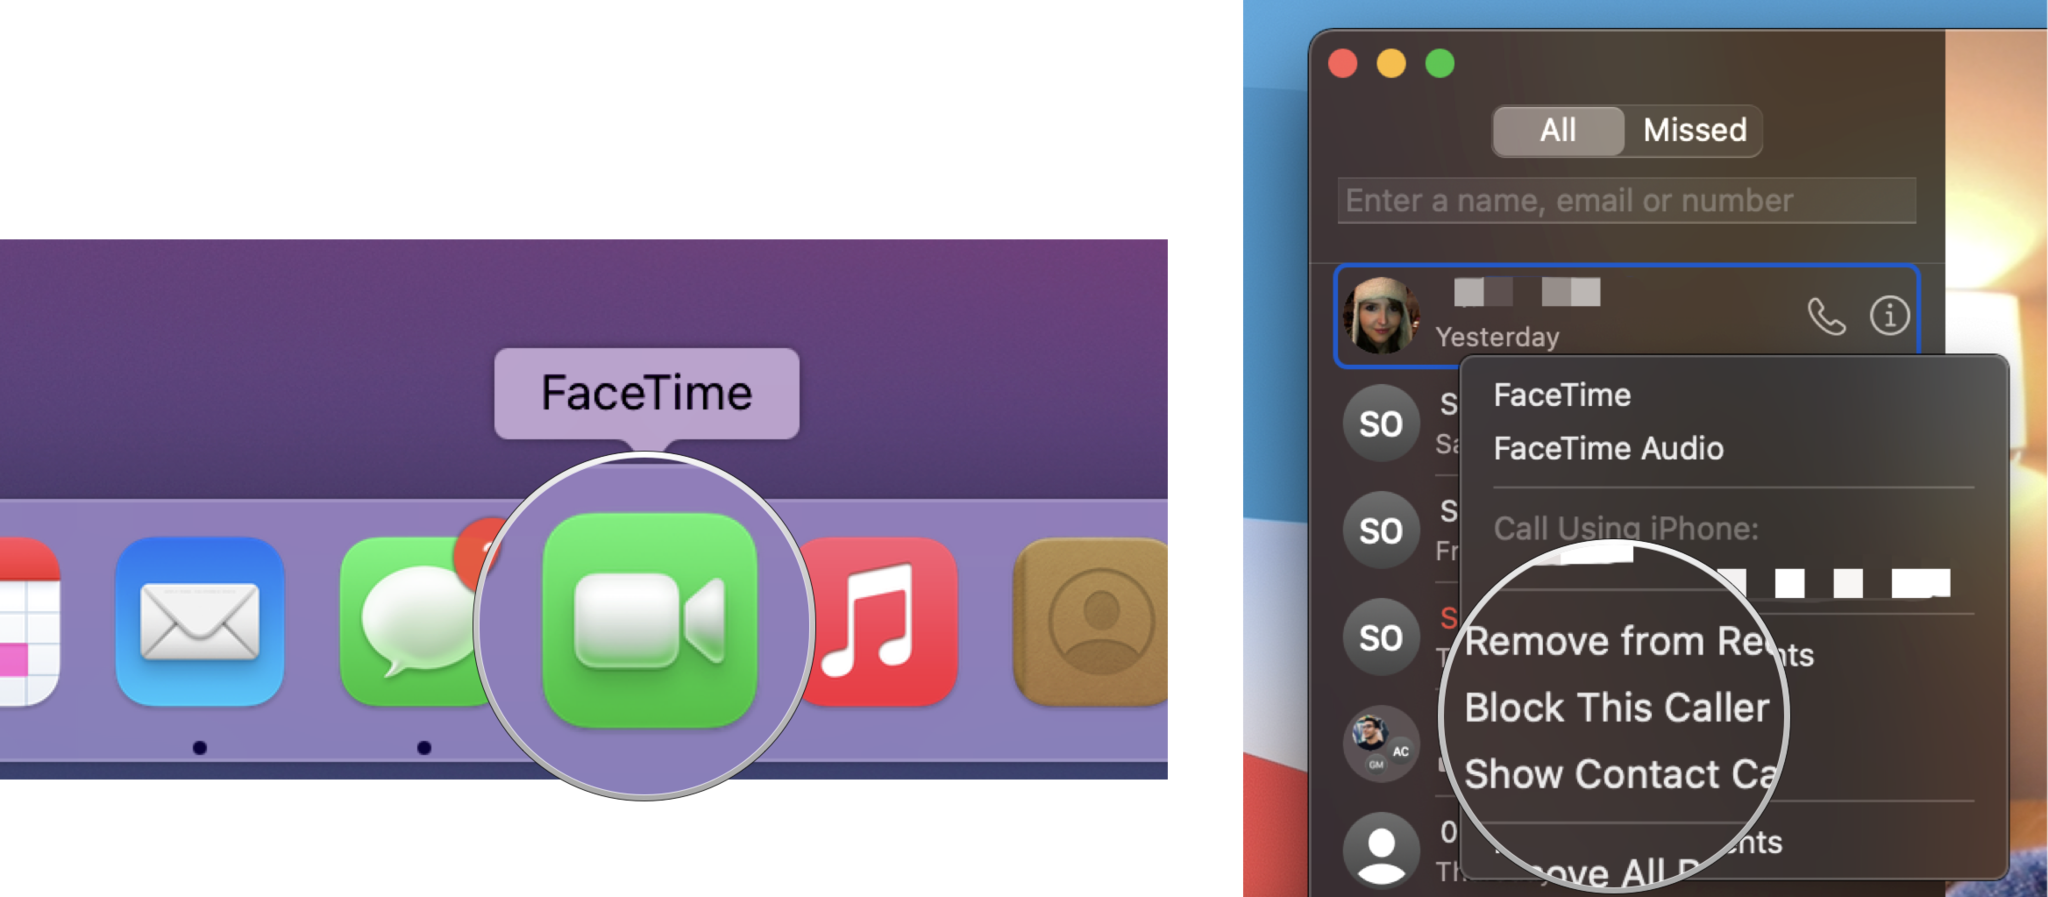 Facetime Macos Big Sur How To Block Calls Facetime App